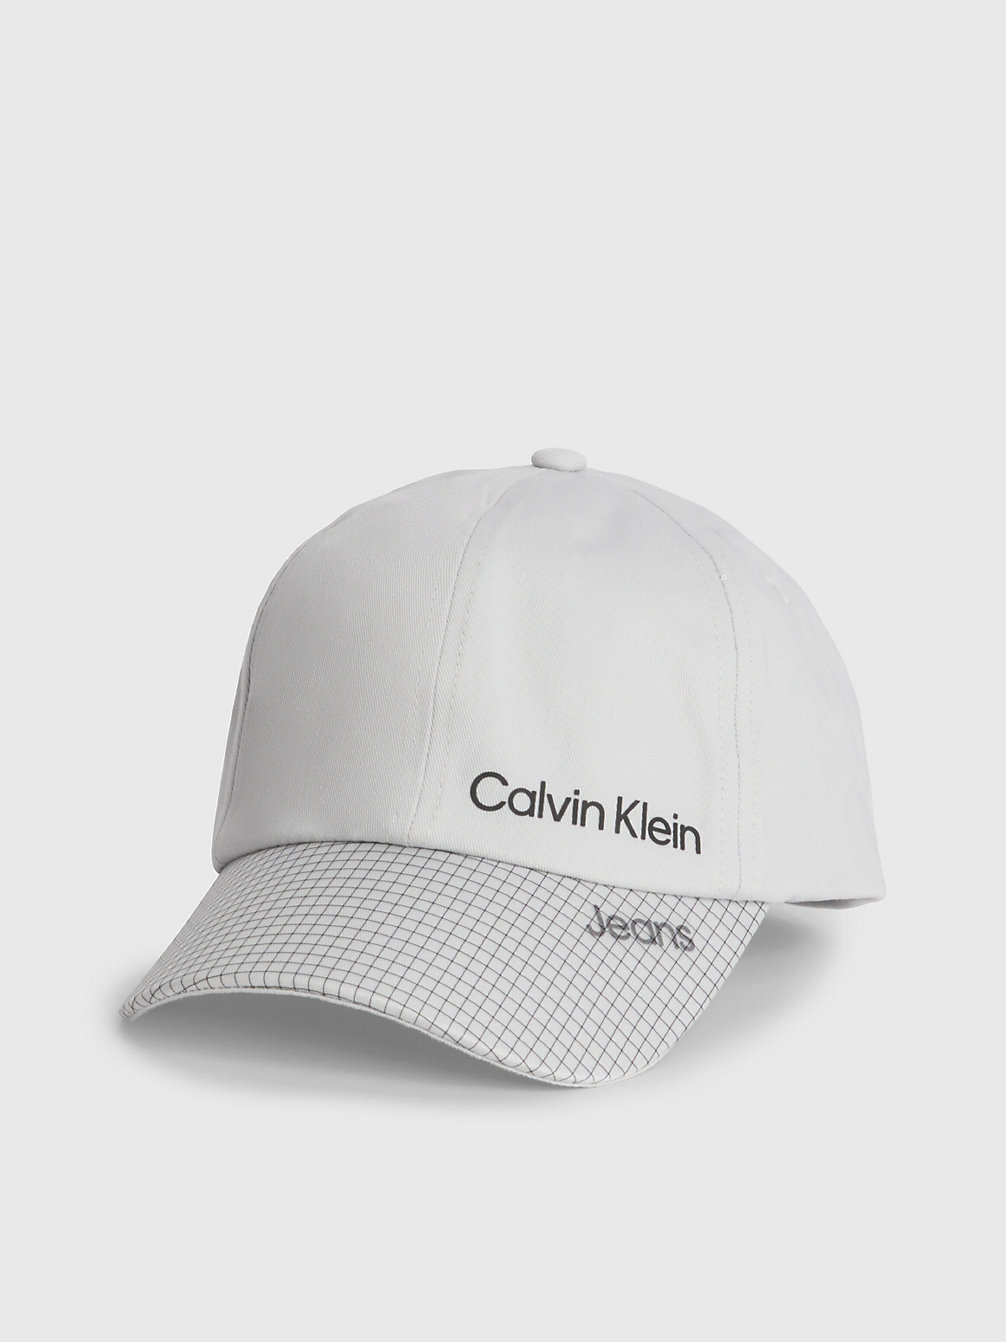 GHOST GREY Kappe Für Kinder Mit Logo undefined kids unisex Calvin Klein